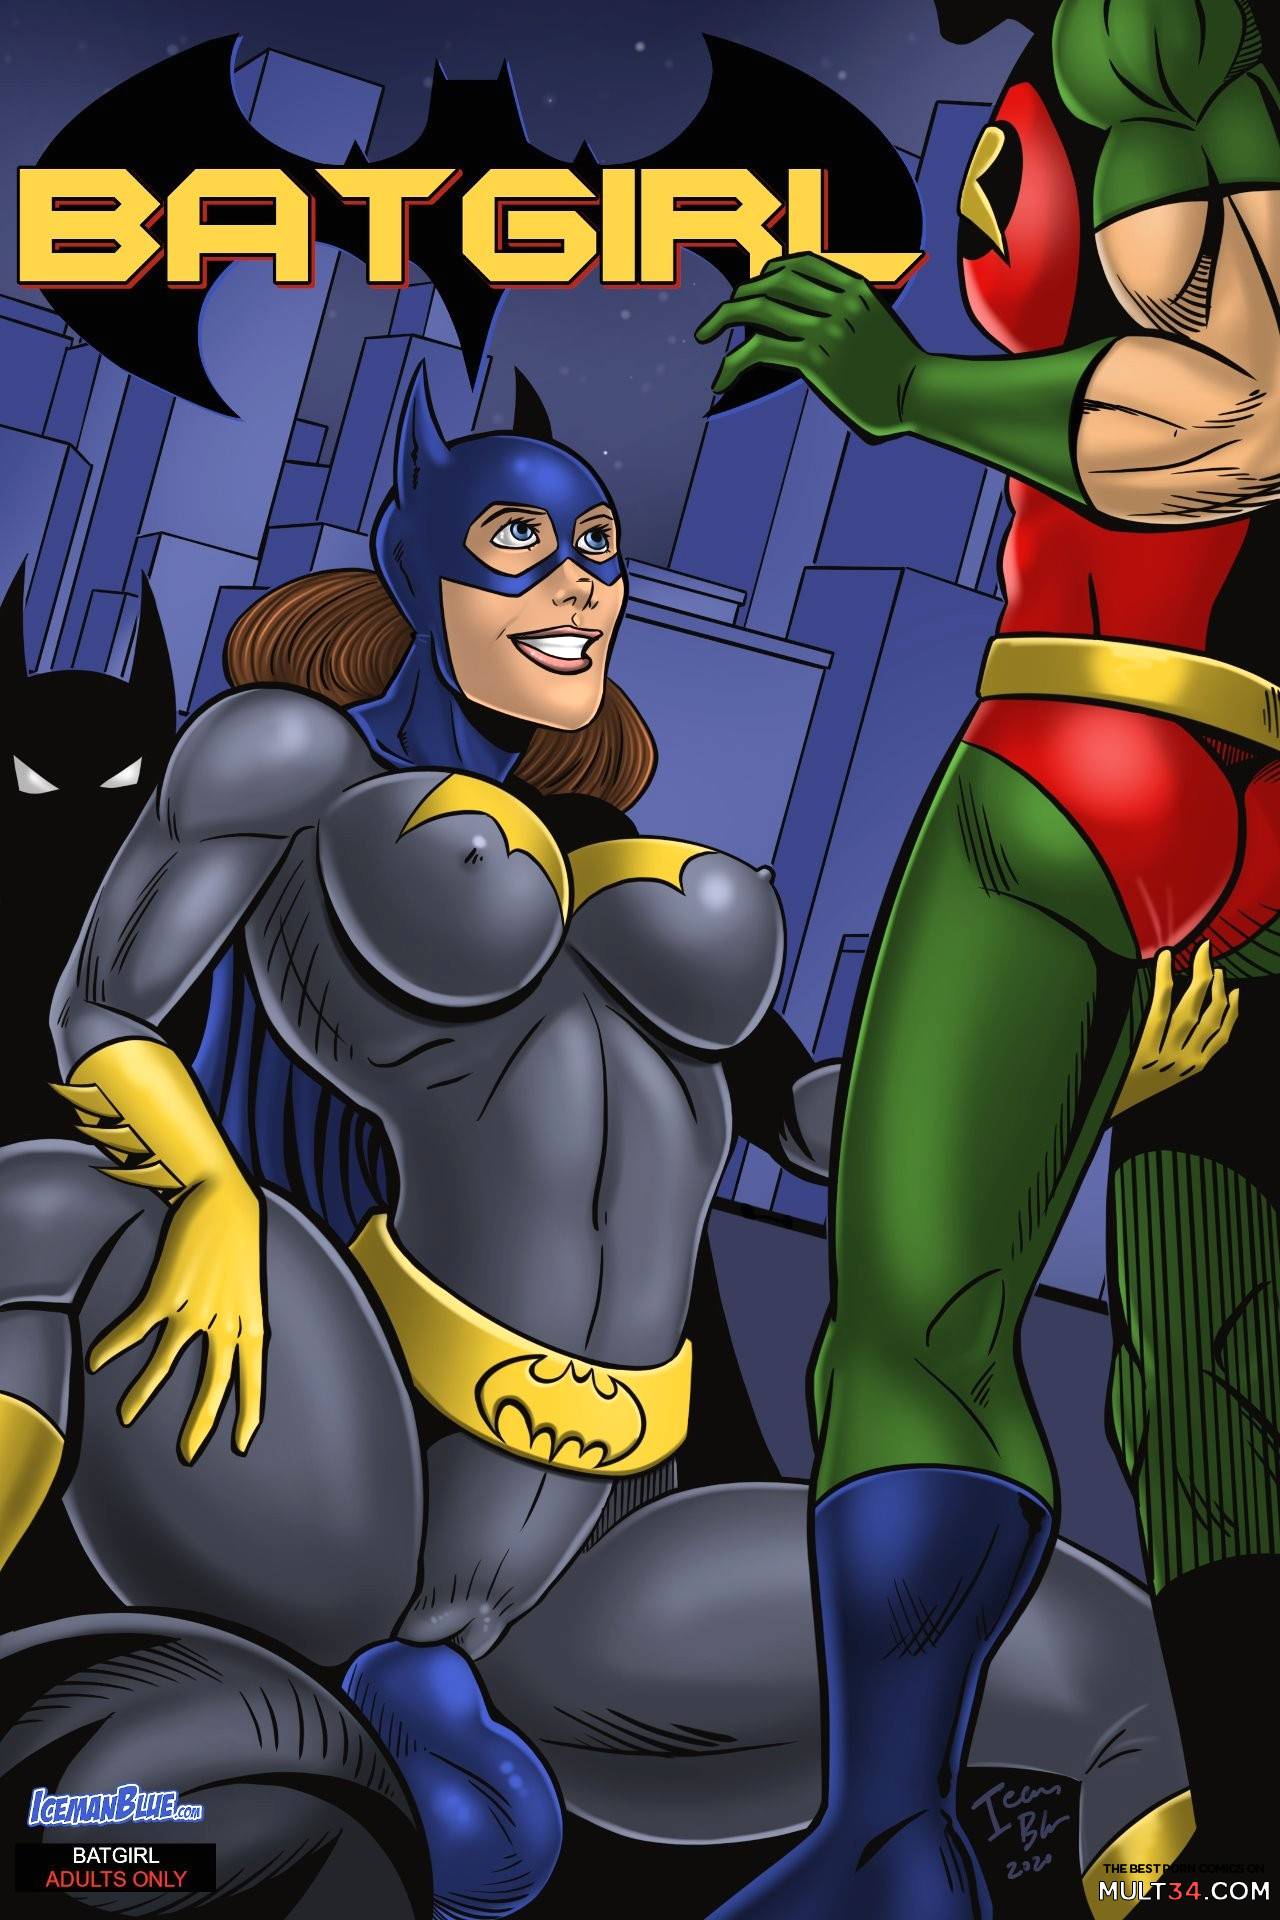 Batman And Batgirl Porn Comics Sexy - Batgirl gay porn comic - the best cartoon porn comics, Rule 34 | MULT34